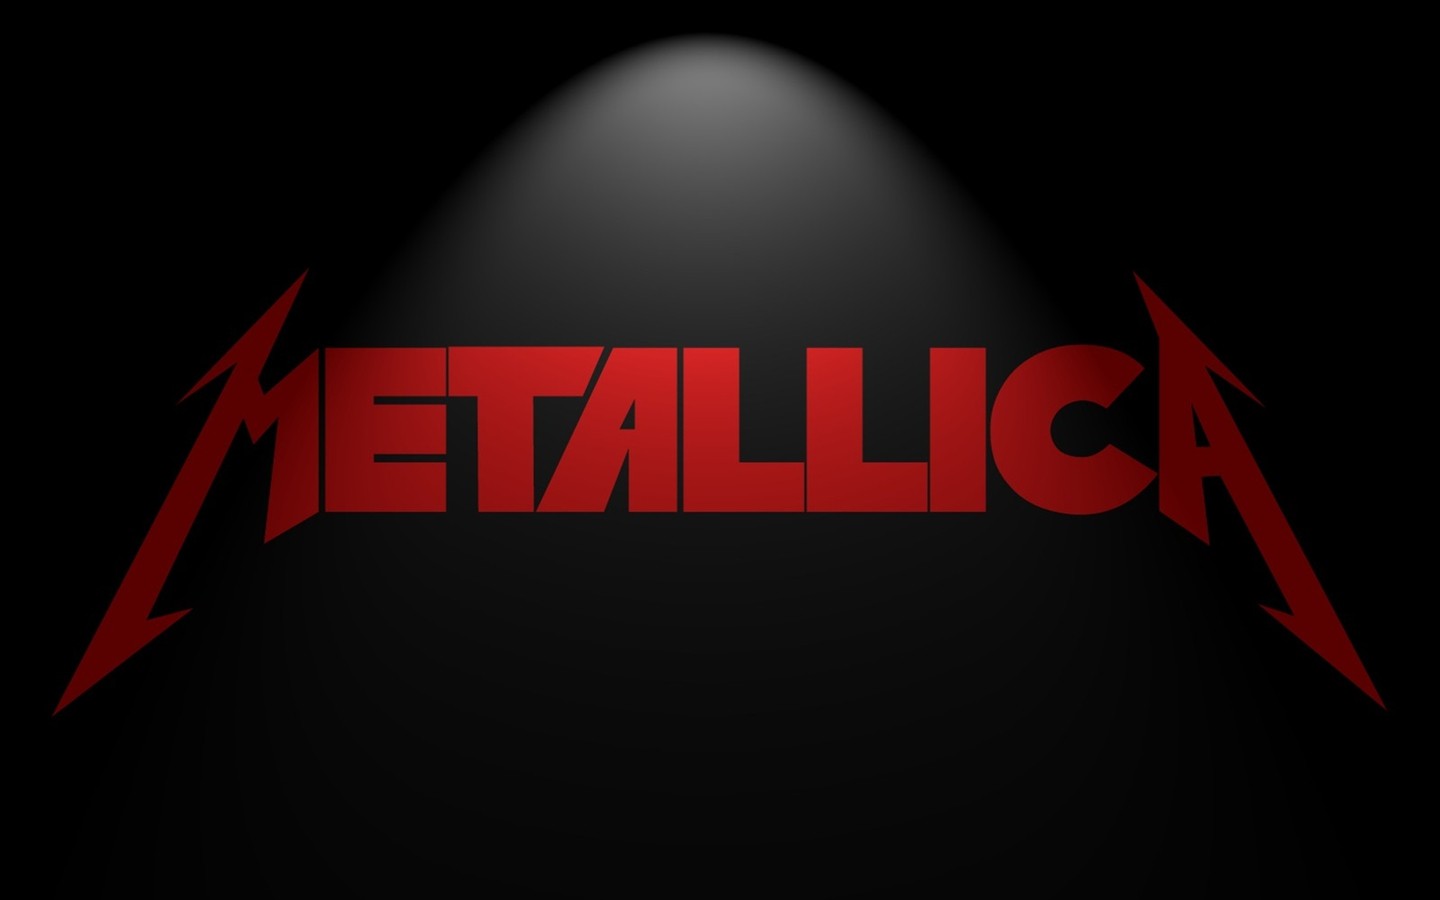 Metallica Wallpaper Background Pictures